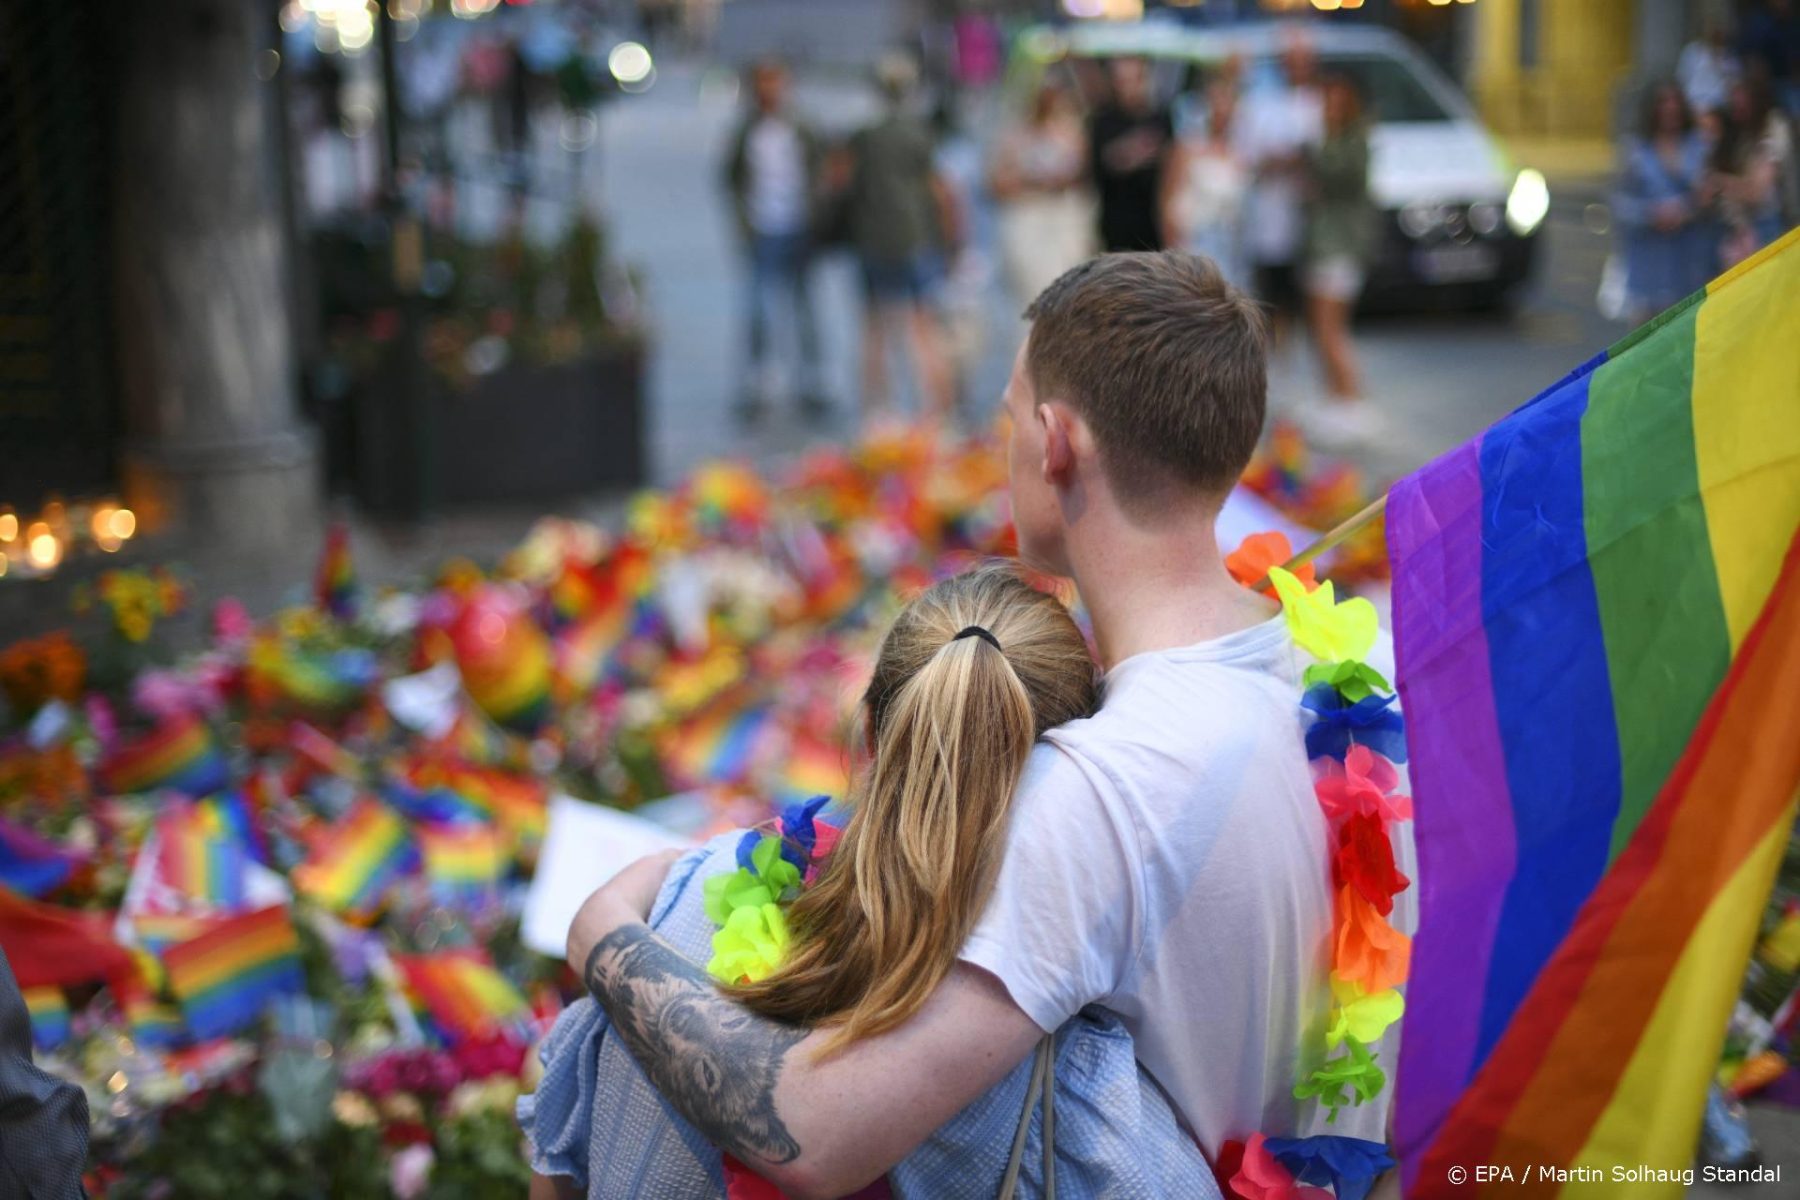 Verdachte moslimterrorist vier weken vast na aanslag gaybar Oslo